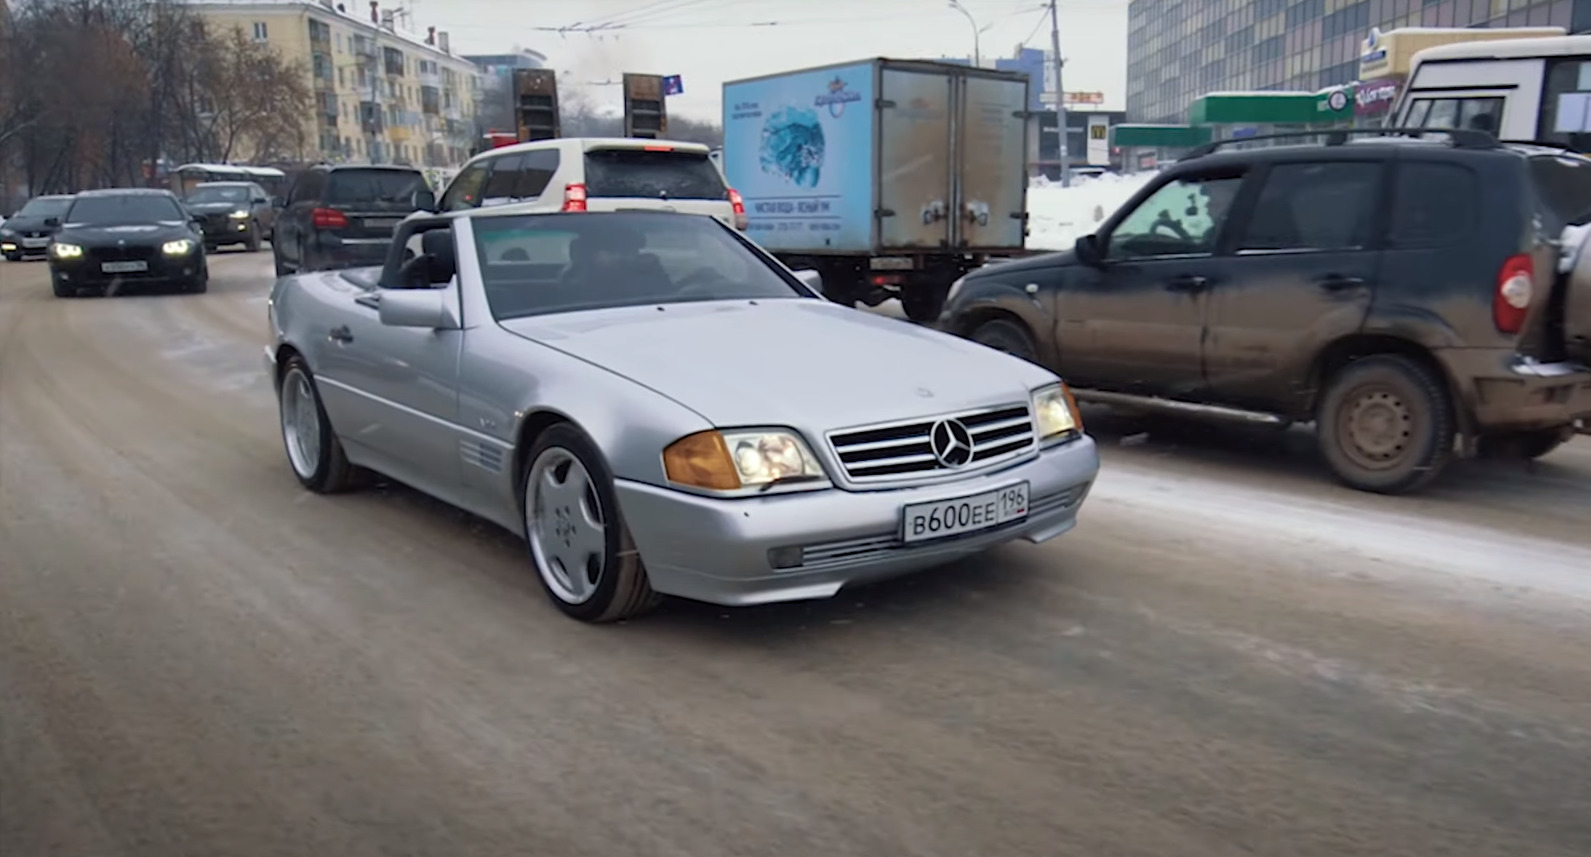 Блогеры из Москвы прилетели на Урал за раритетным кабриолетом Mercedes и прокатились на нем в -28 °C